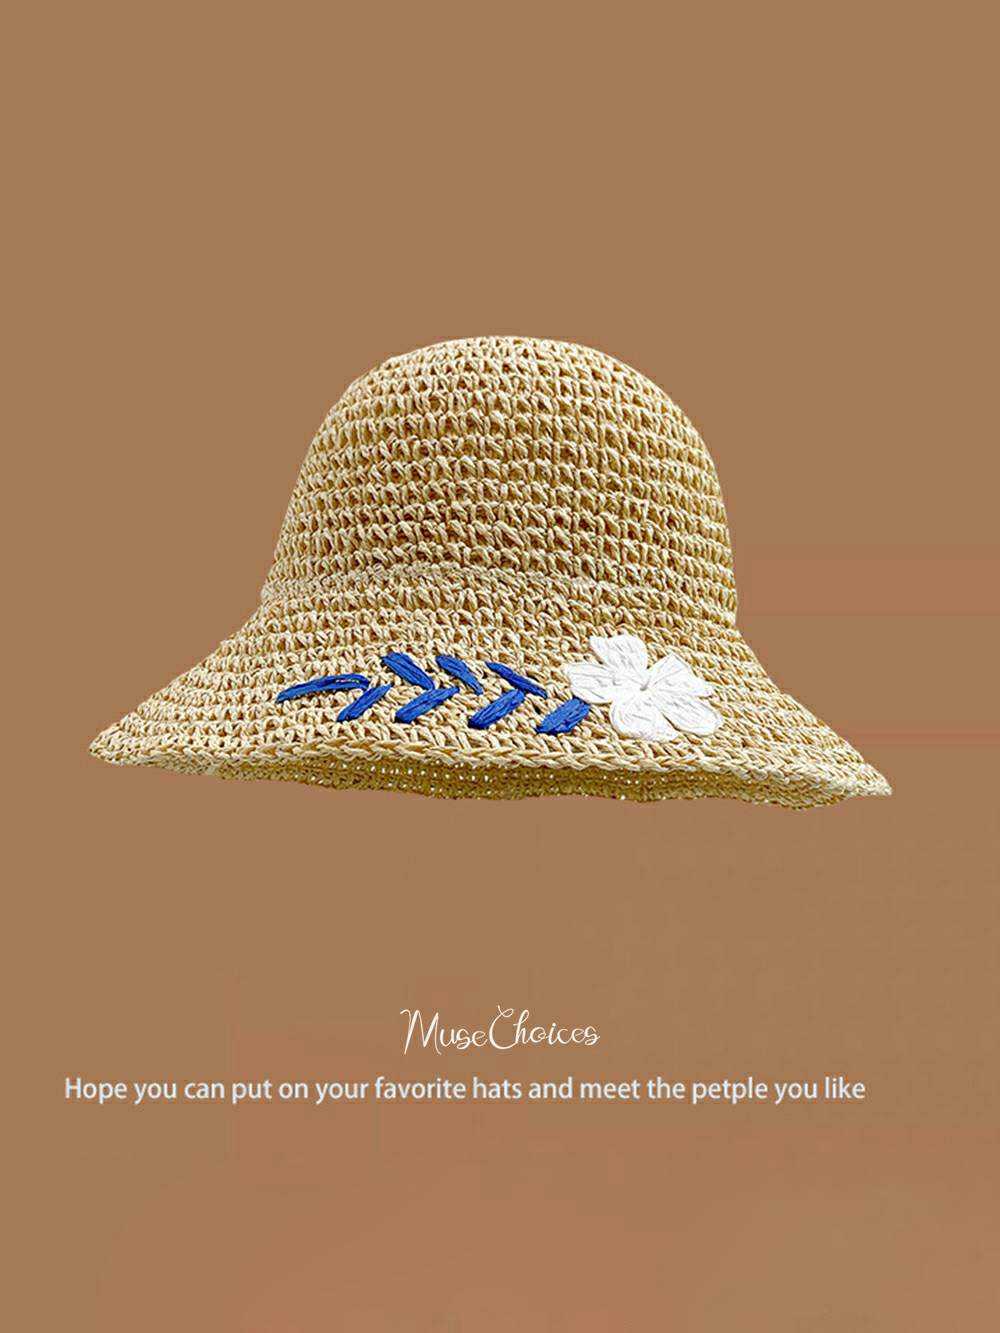 Handwoven Willow Flower Sun Hat in Beige